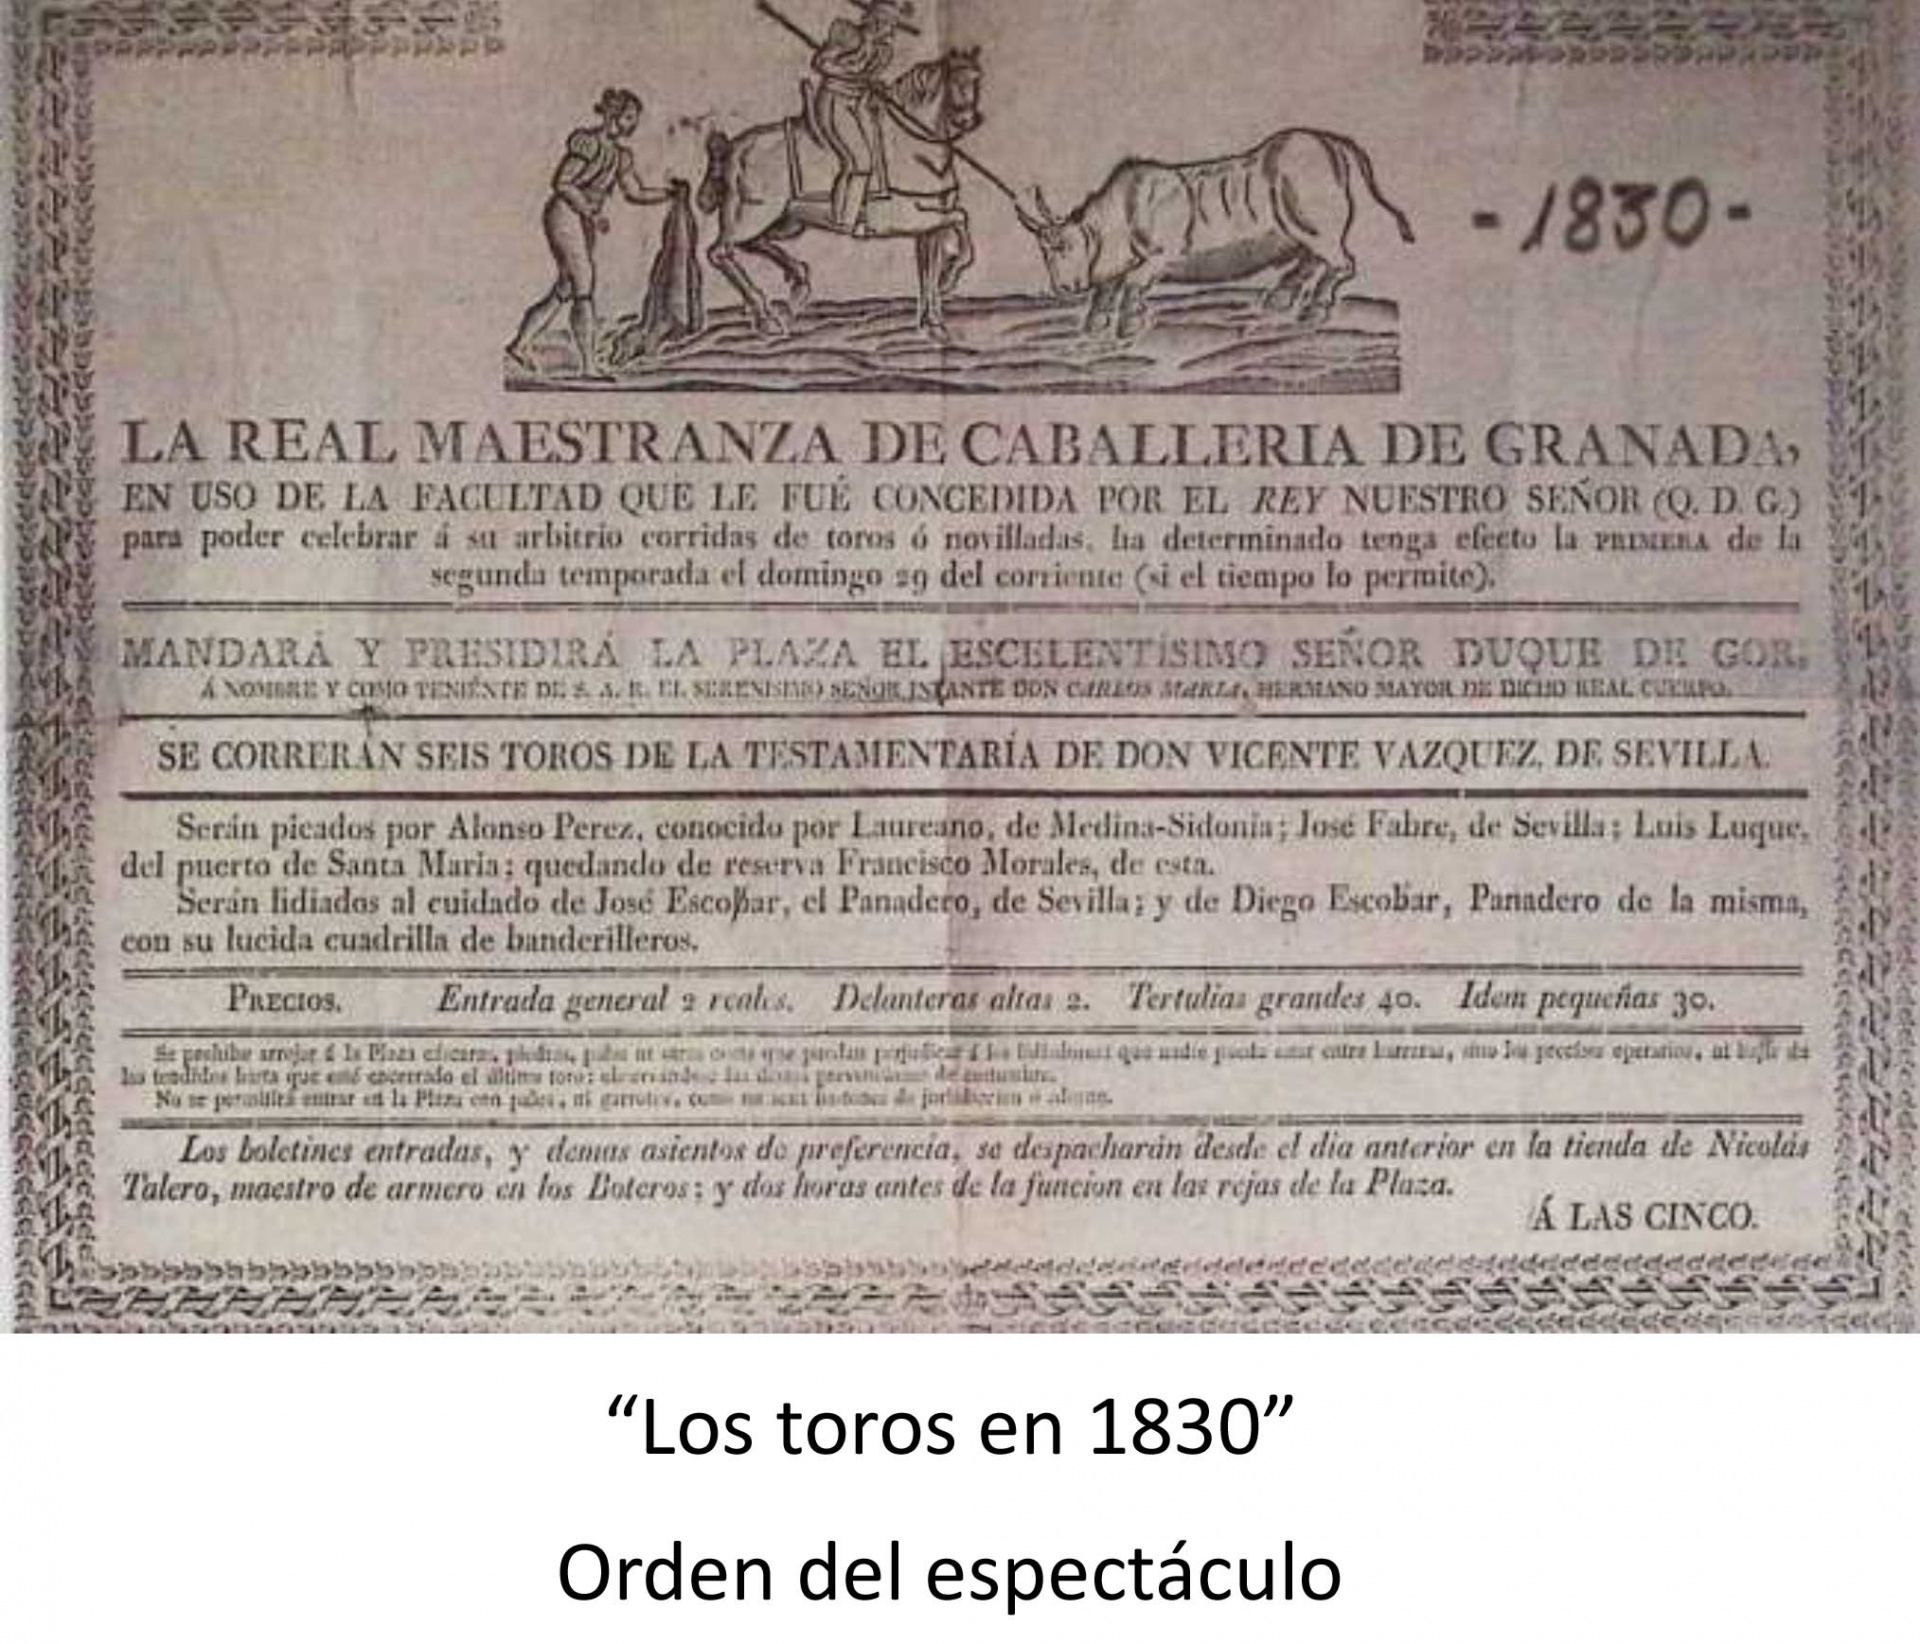 Orden del espectáculo [Los toros en 1830]